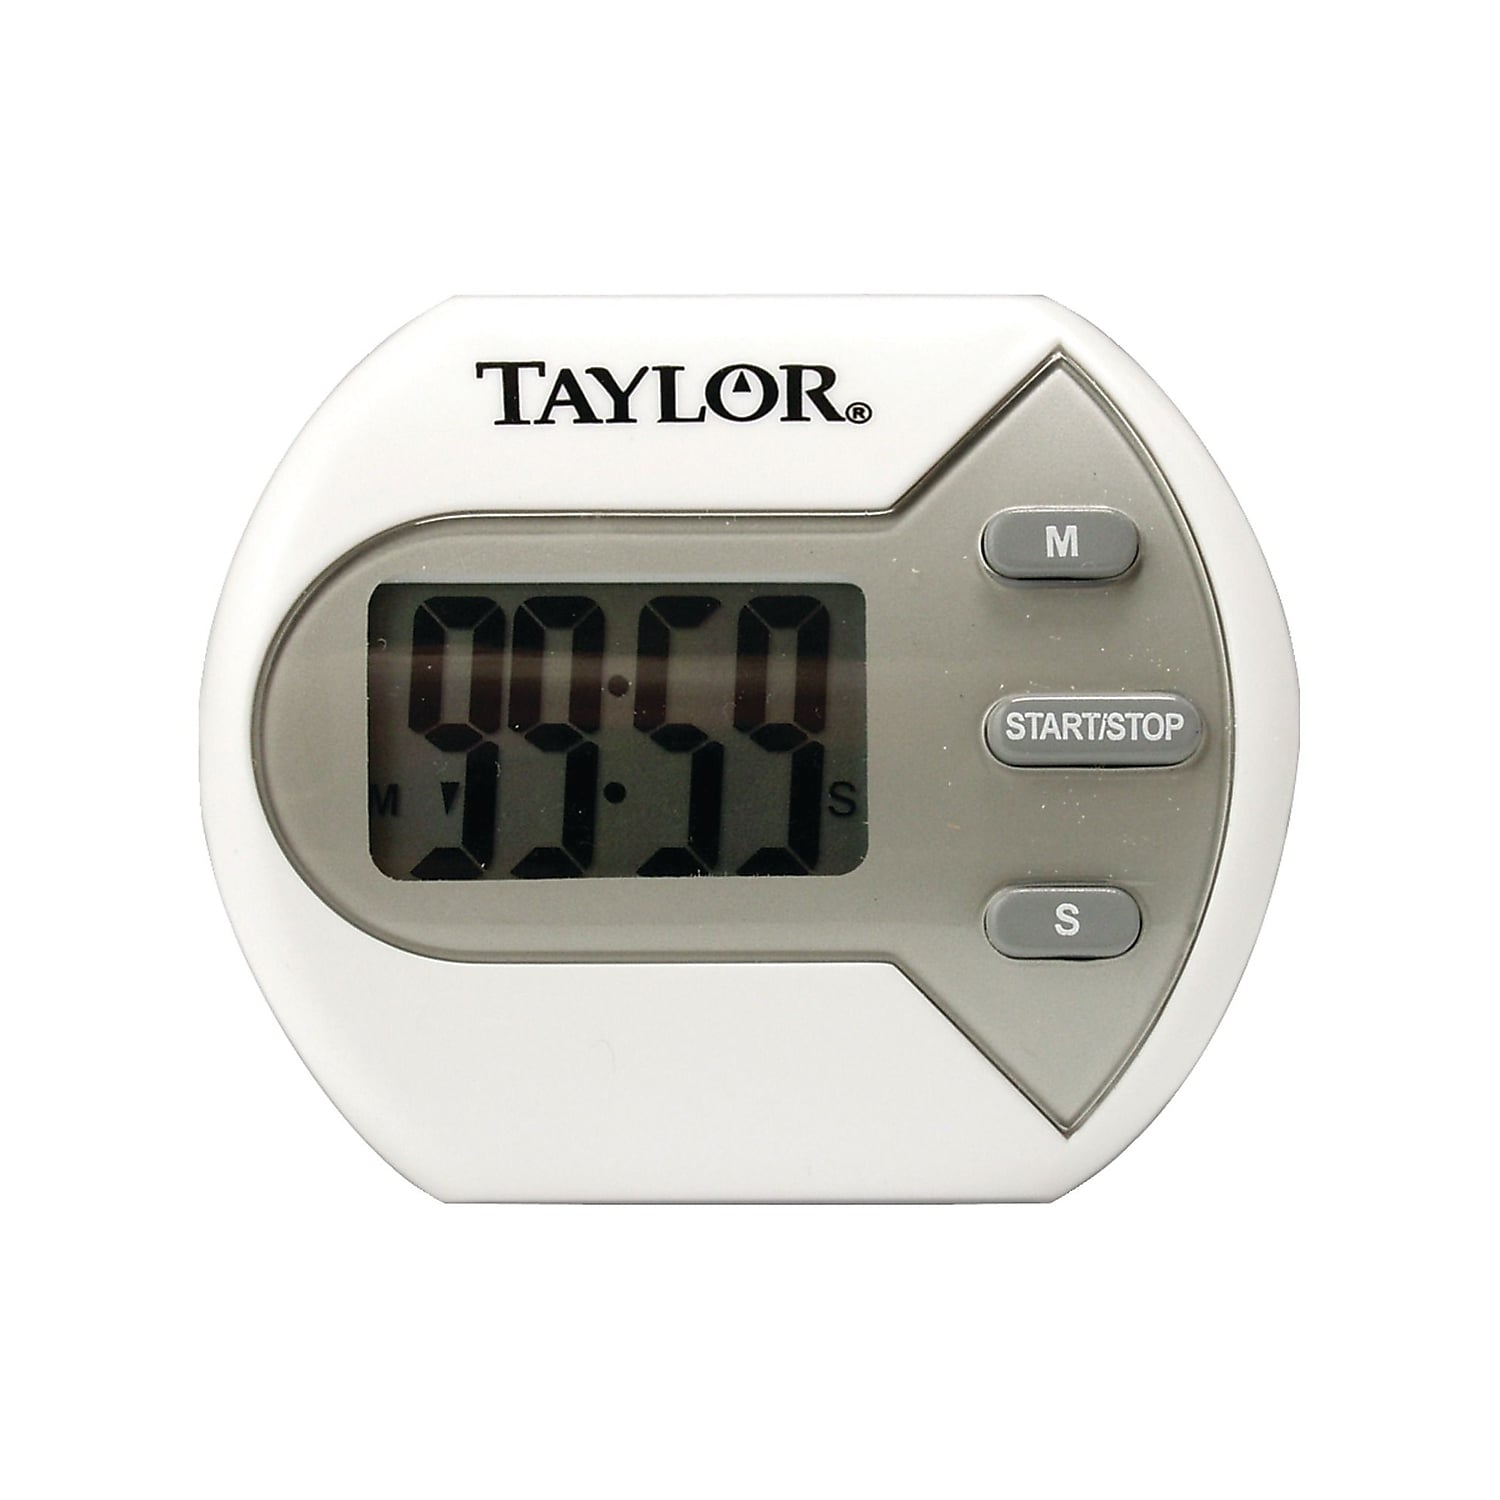 Taylor 5806 Digital Timer, White - image 1 of 8